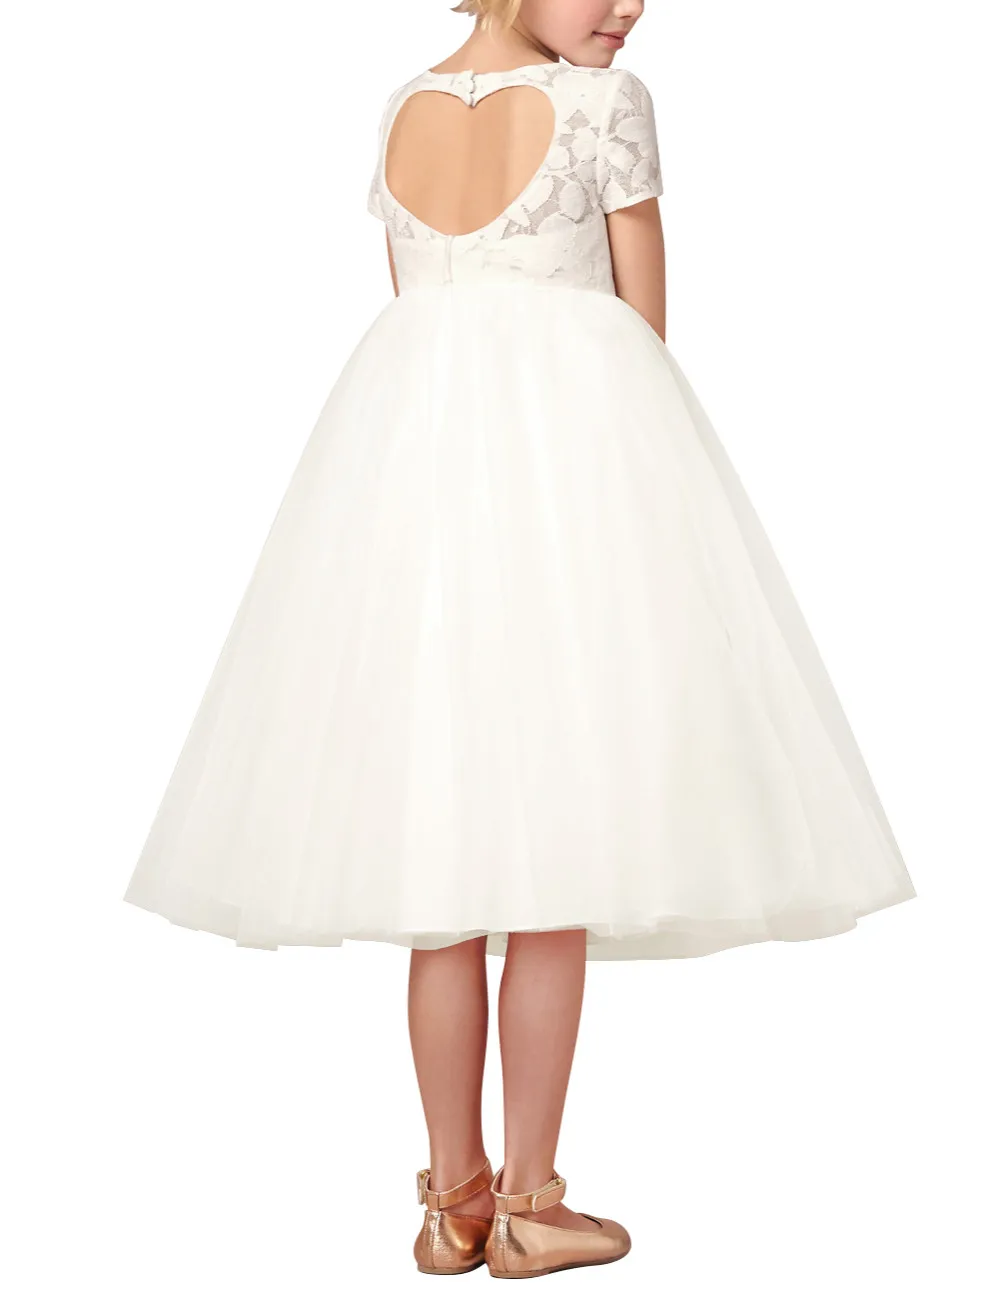 Iiniim/платье с цветочным узором для девочек; цвет белый, слоновой кости; Vestidos; праздничное платье принцессы для маленьких детей; детское платье с сердечками для свадьбы